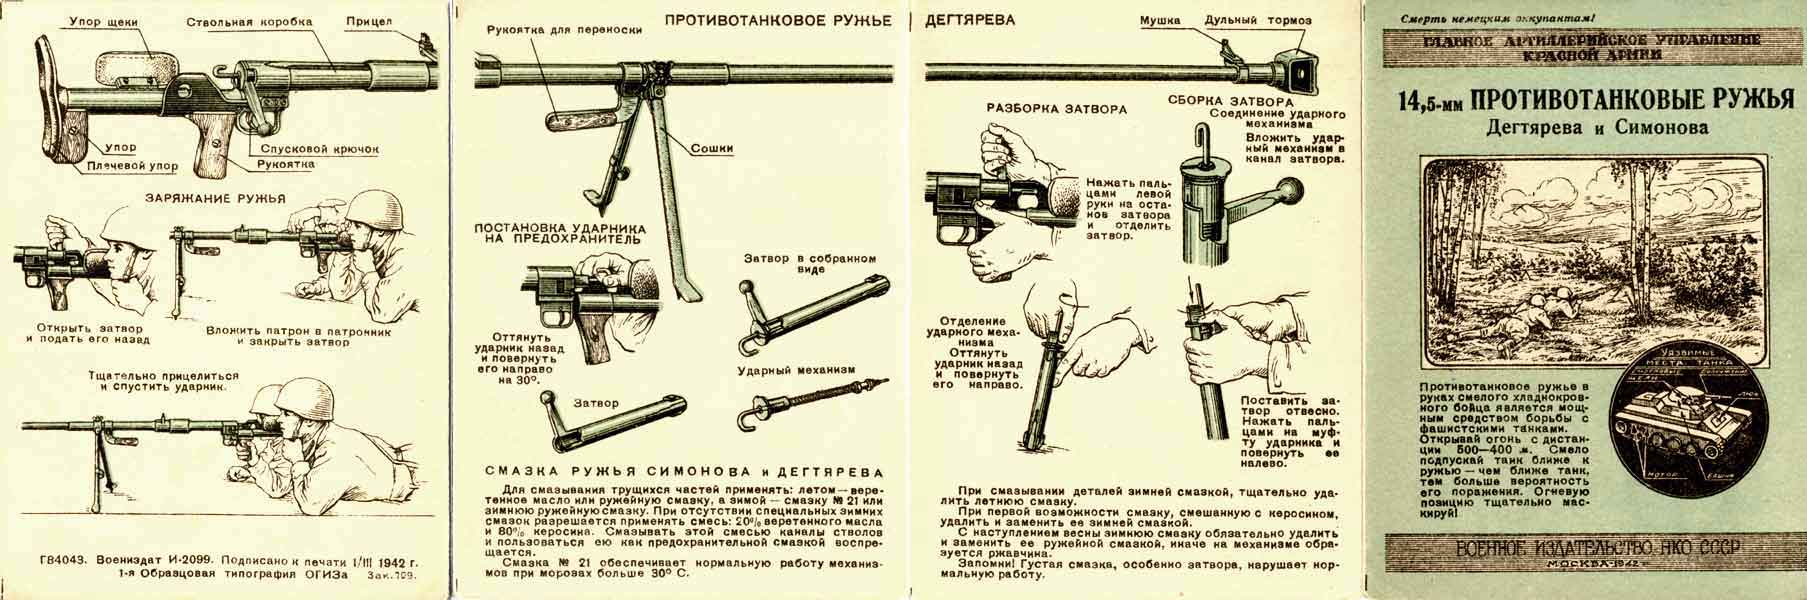 Противотанковое ружьё Симонова (ПТРС): конструкция, характеристики, особенности применения